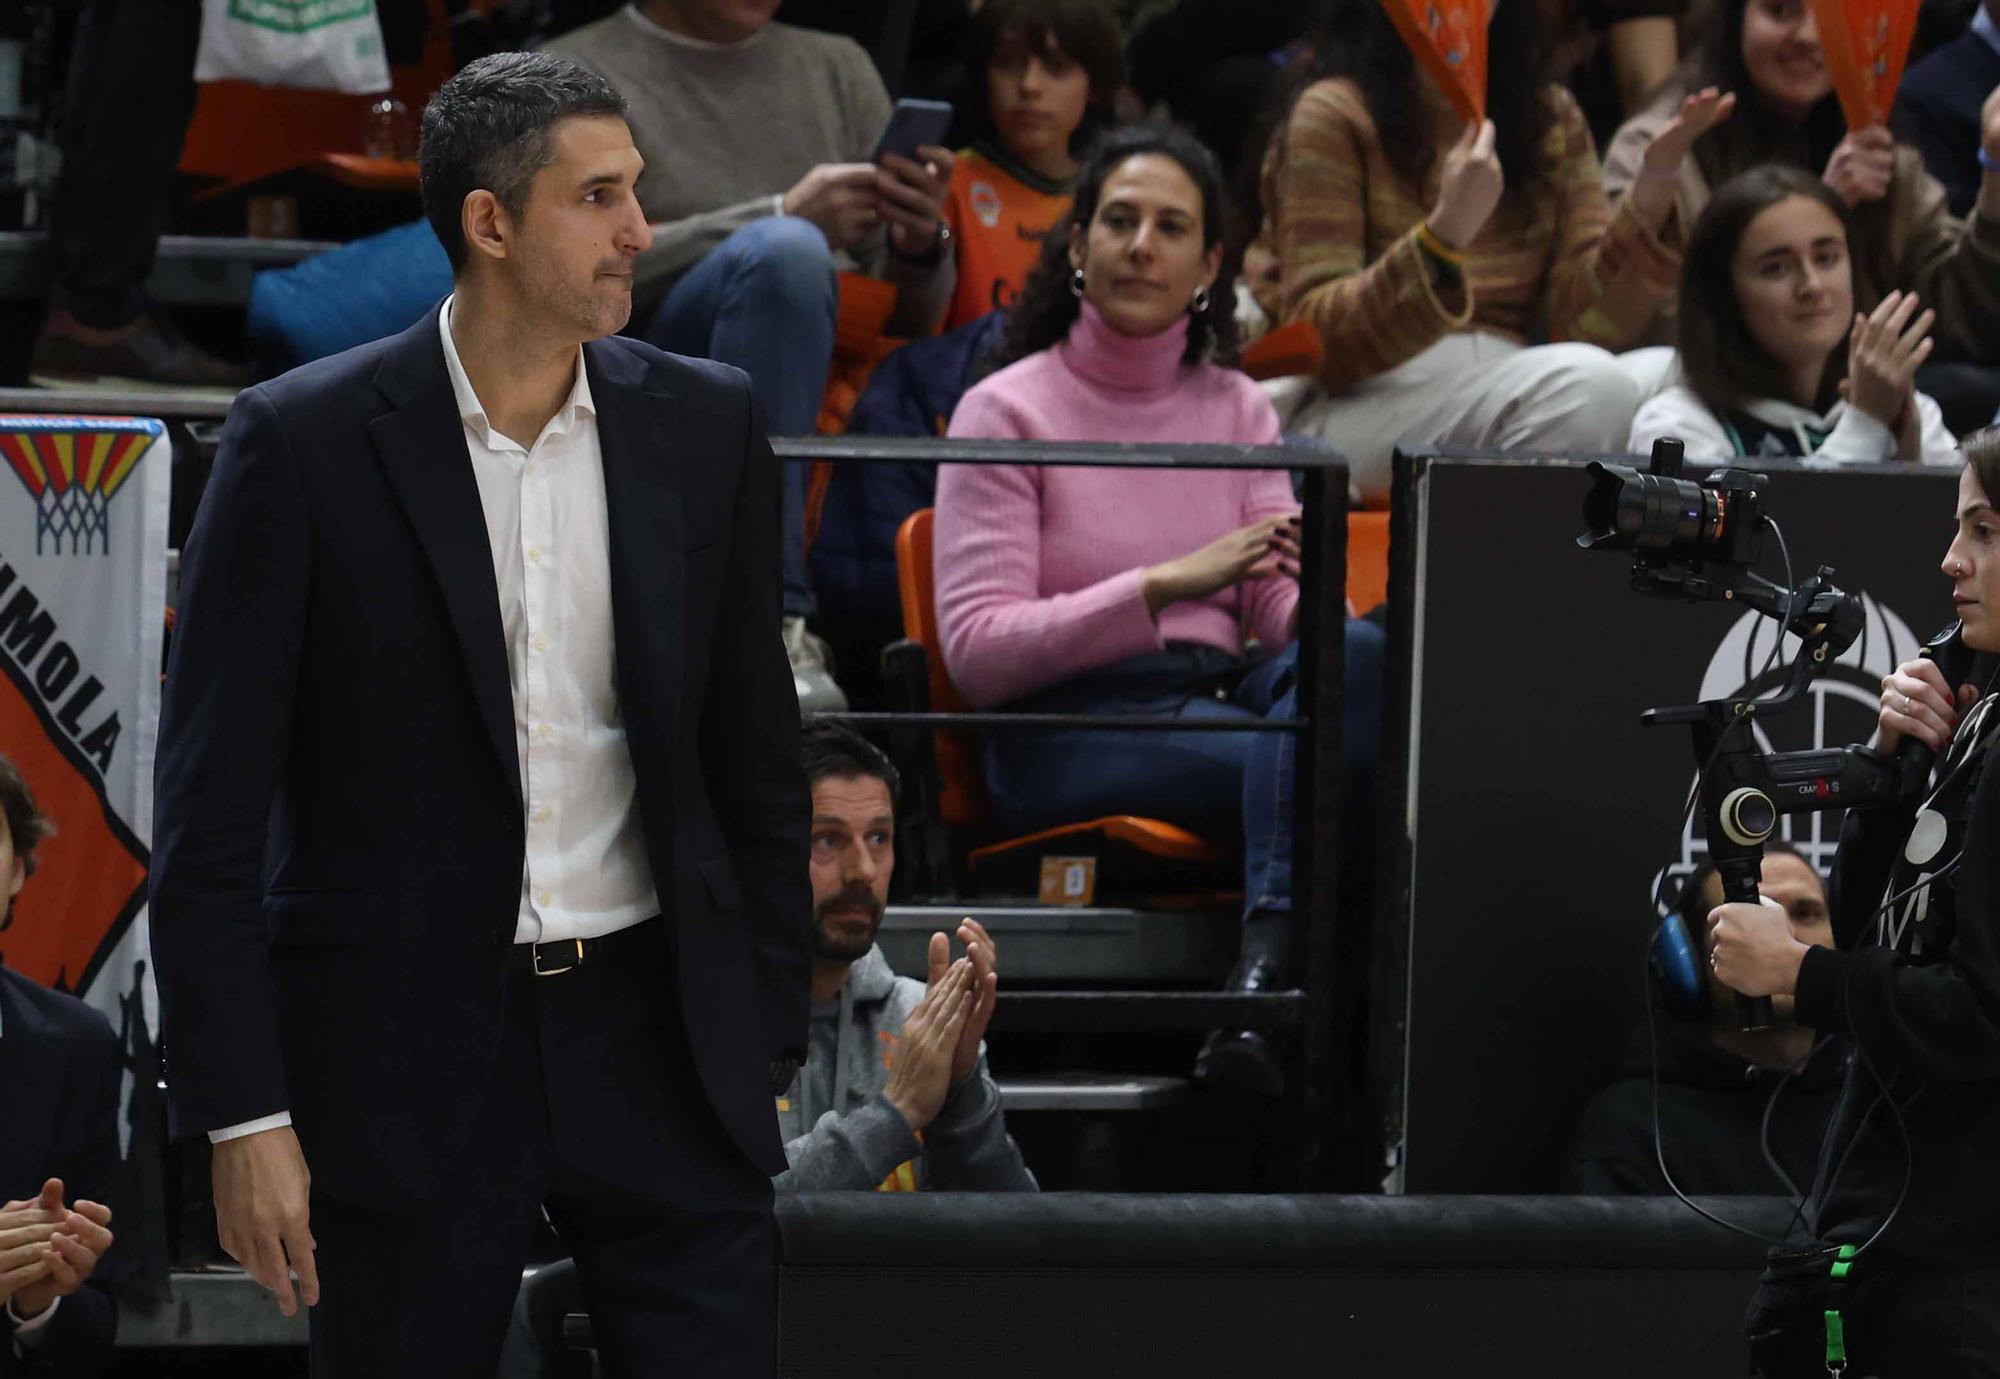 Valencia Basket - Spar Girona